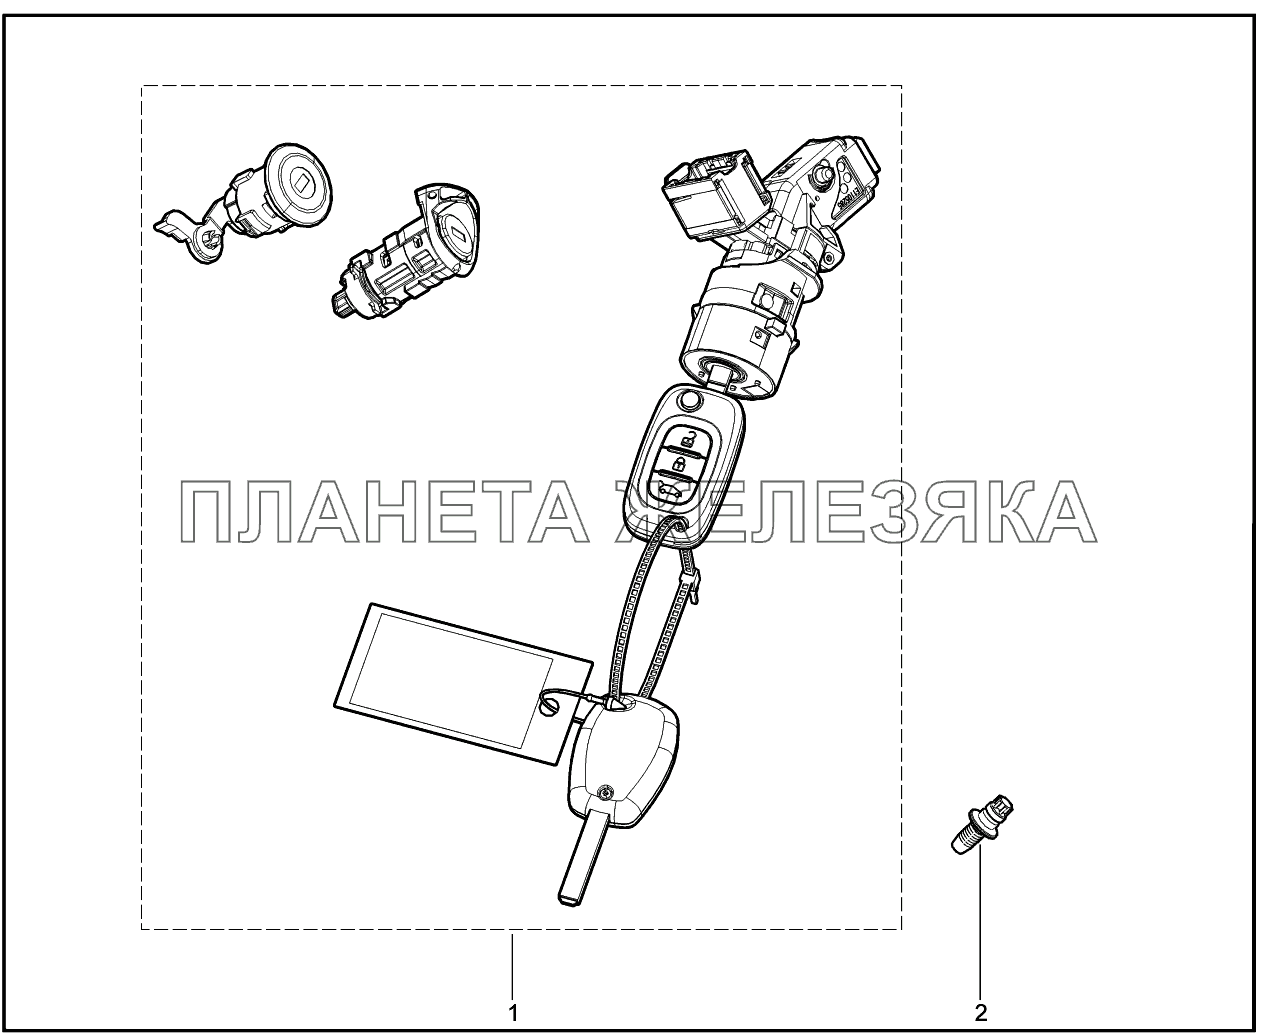 841010. Имобилизатор Lada Vesta